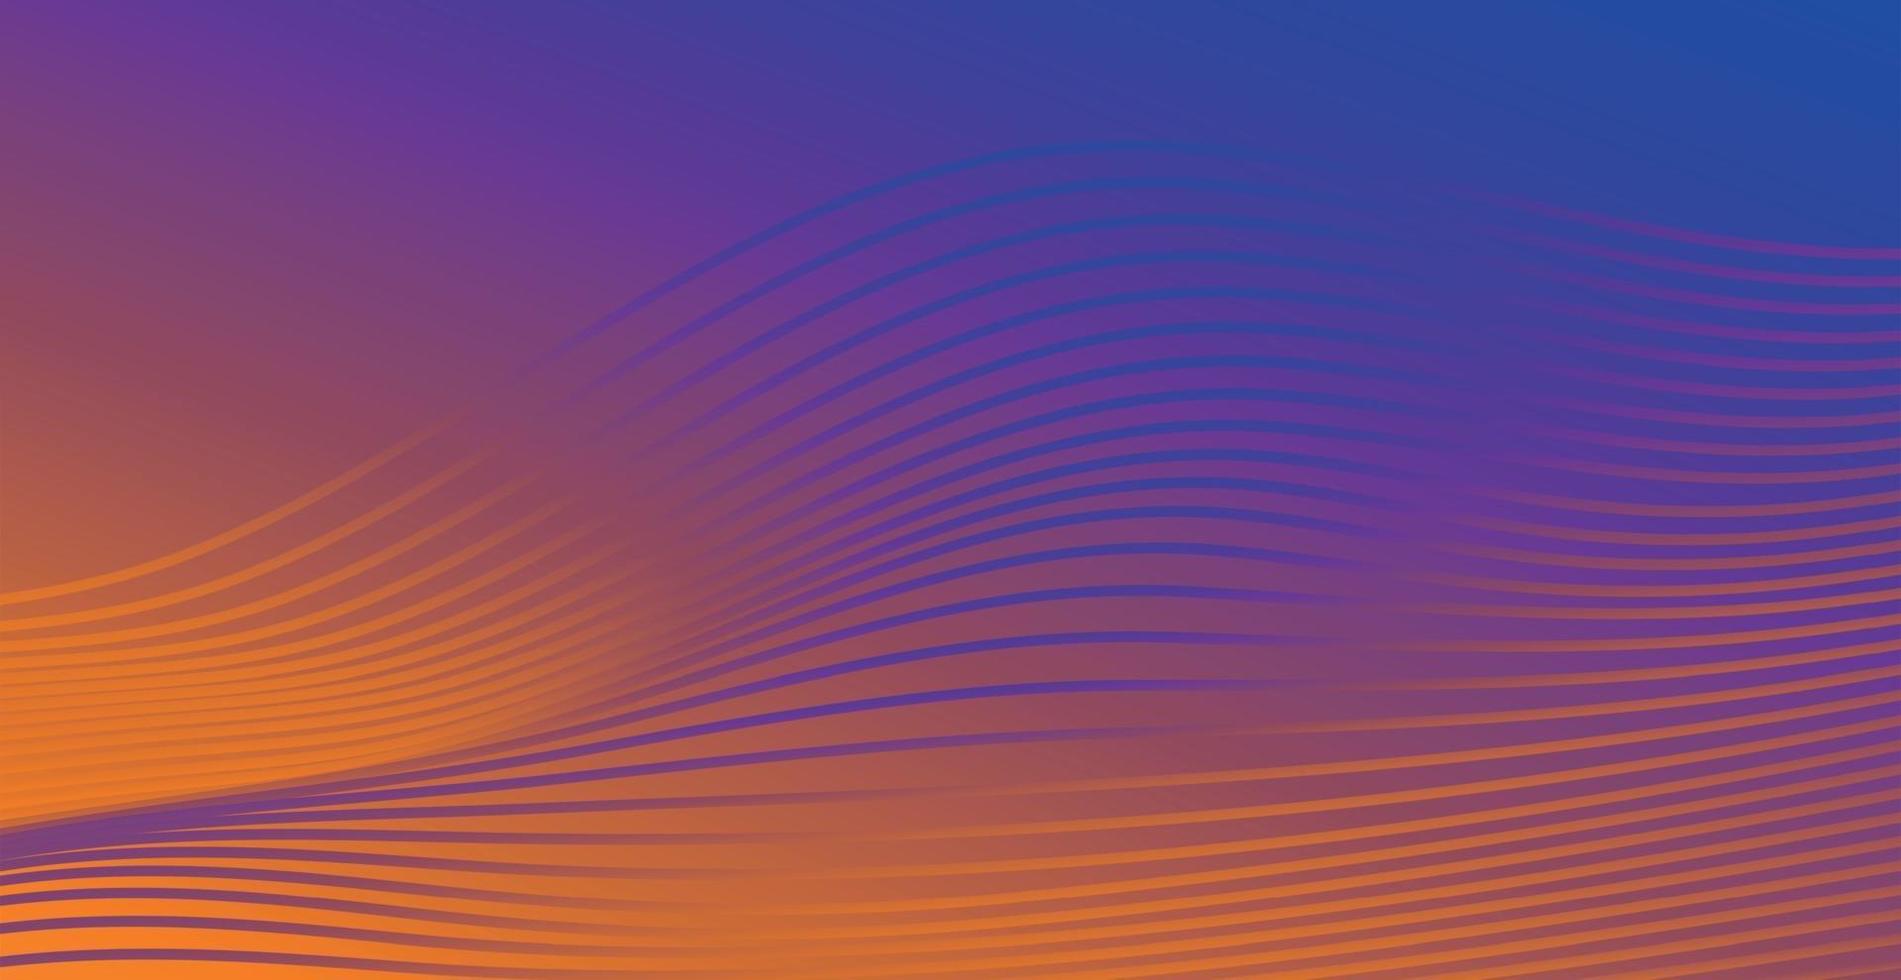 sfondo astratto viola-arancio con linee ondulate - vettore